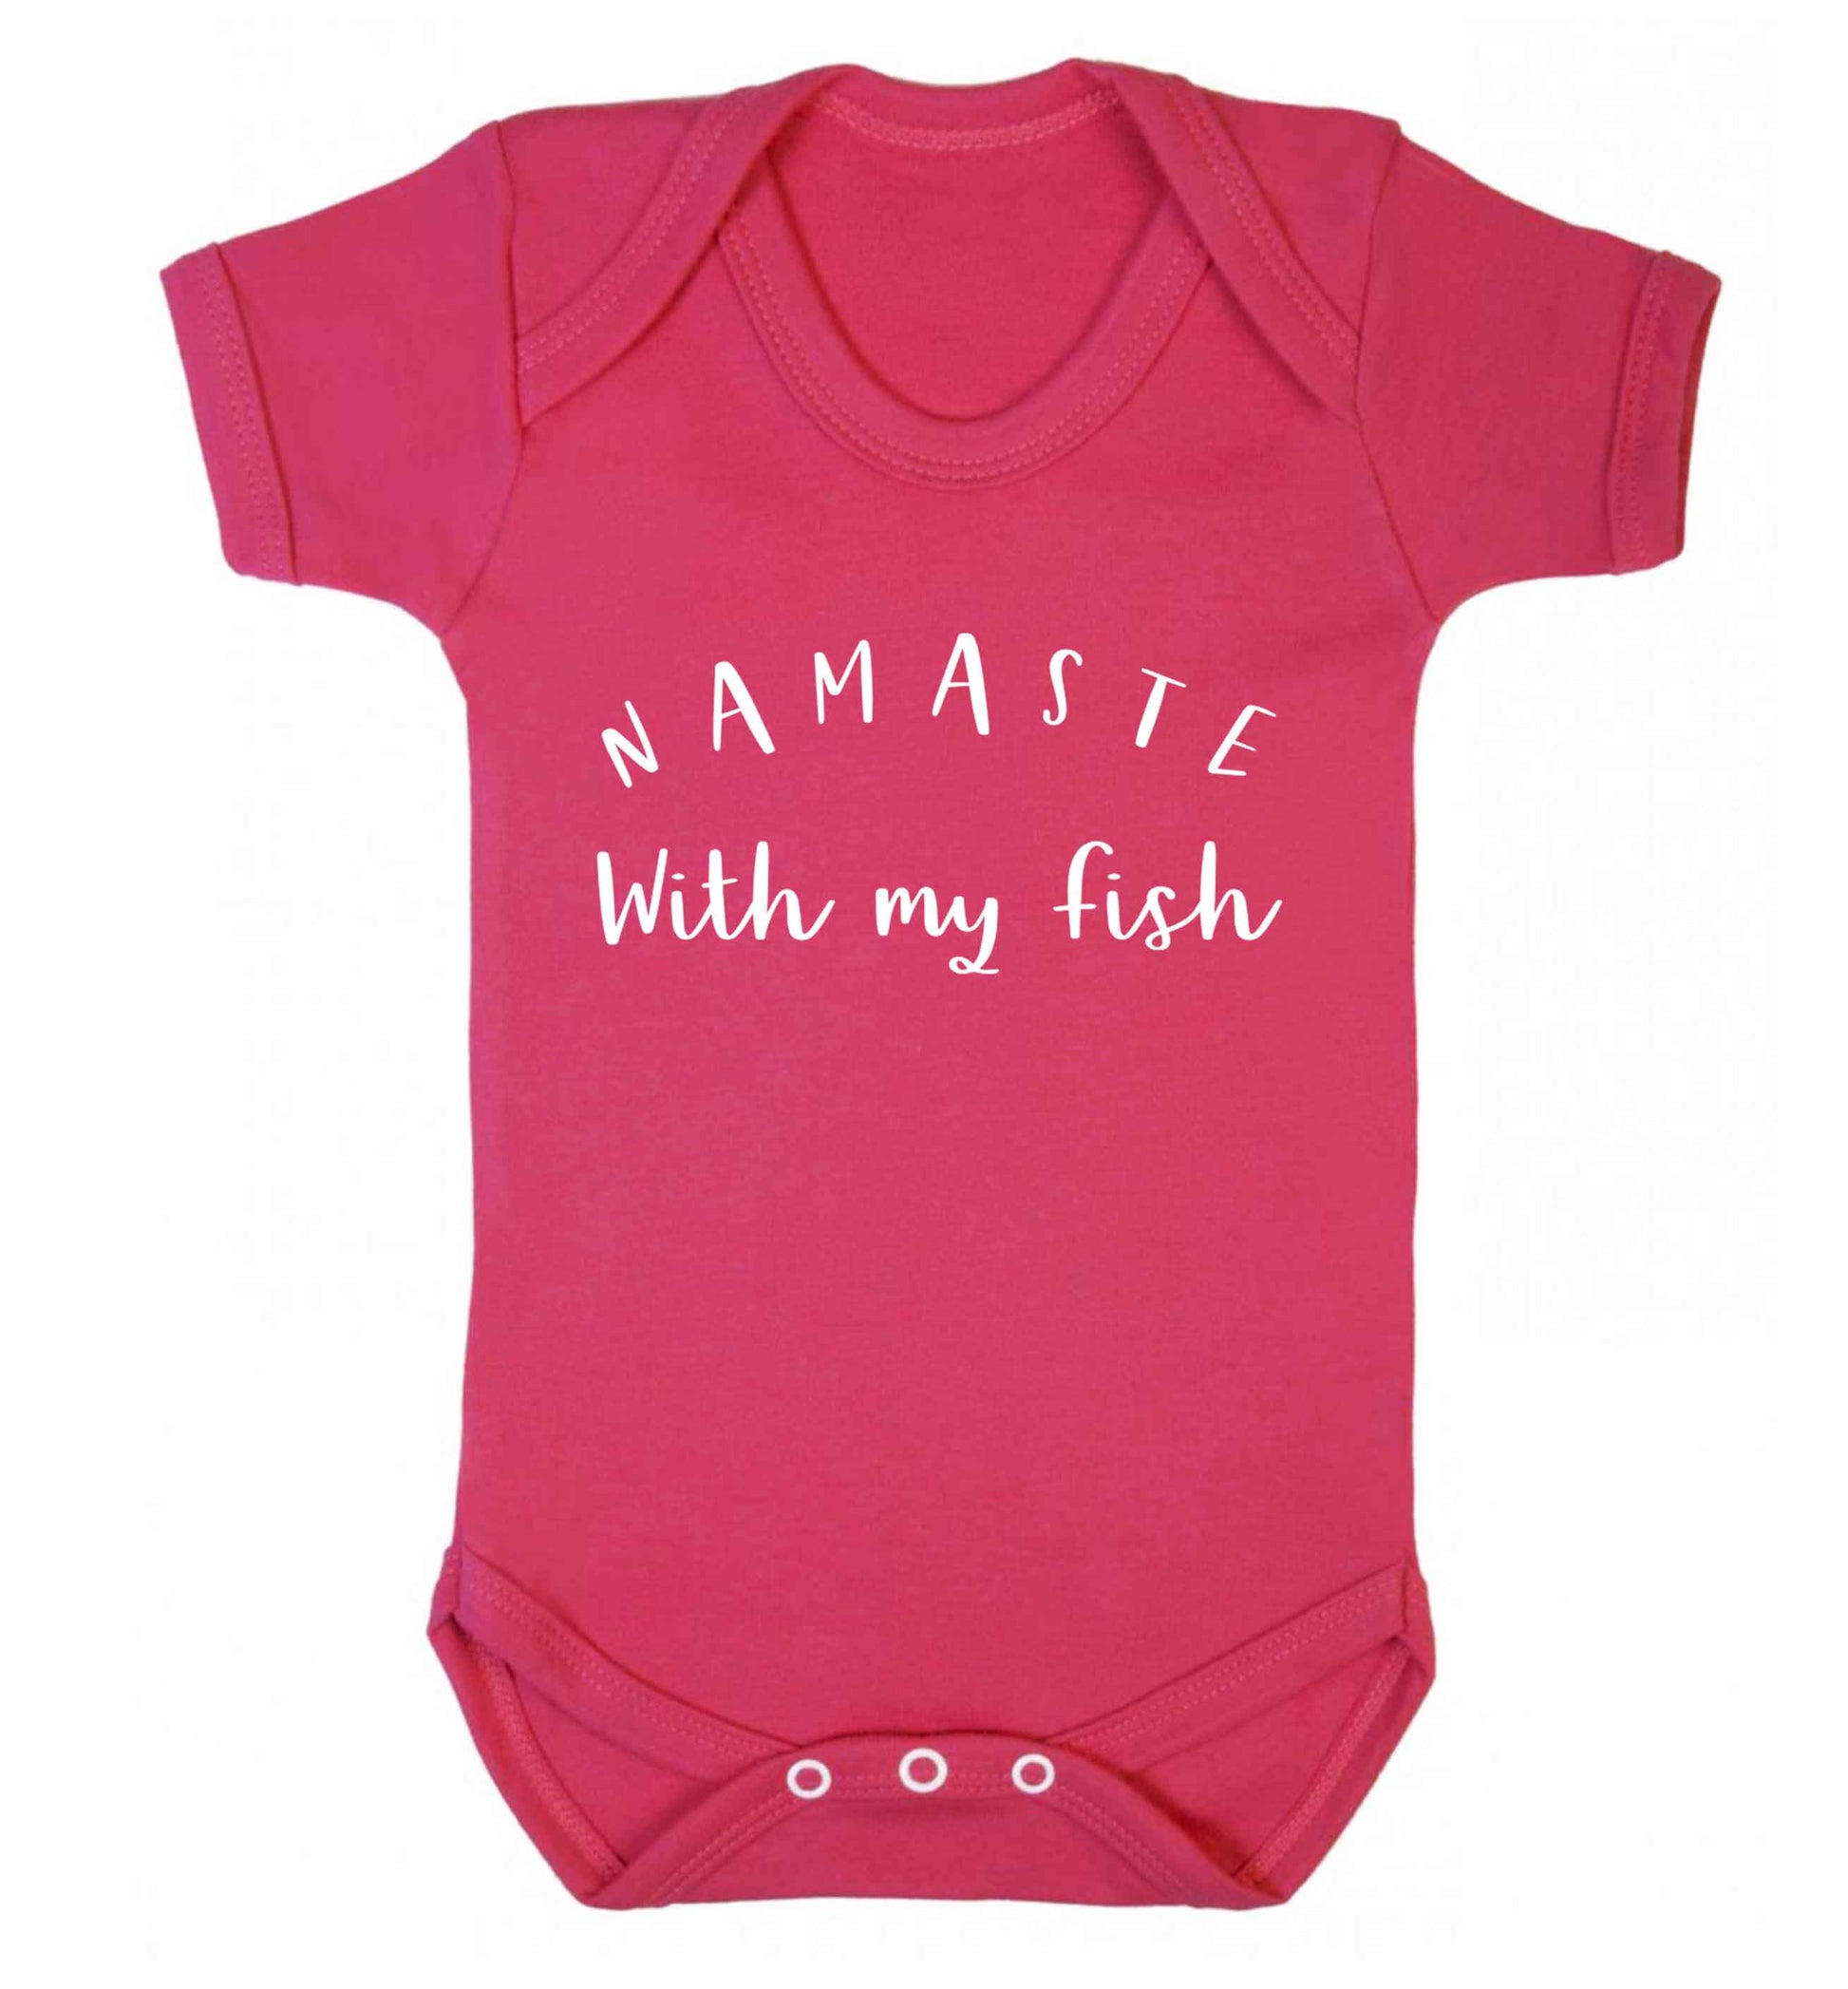 Namaste with my fish Baby Vest dark pink 18-24 months